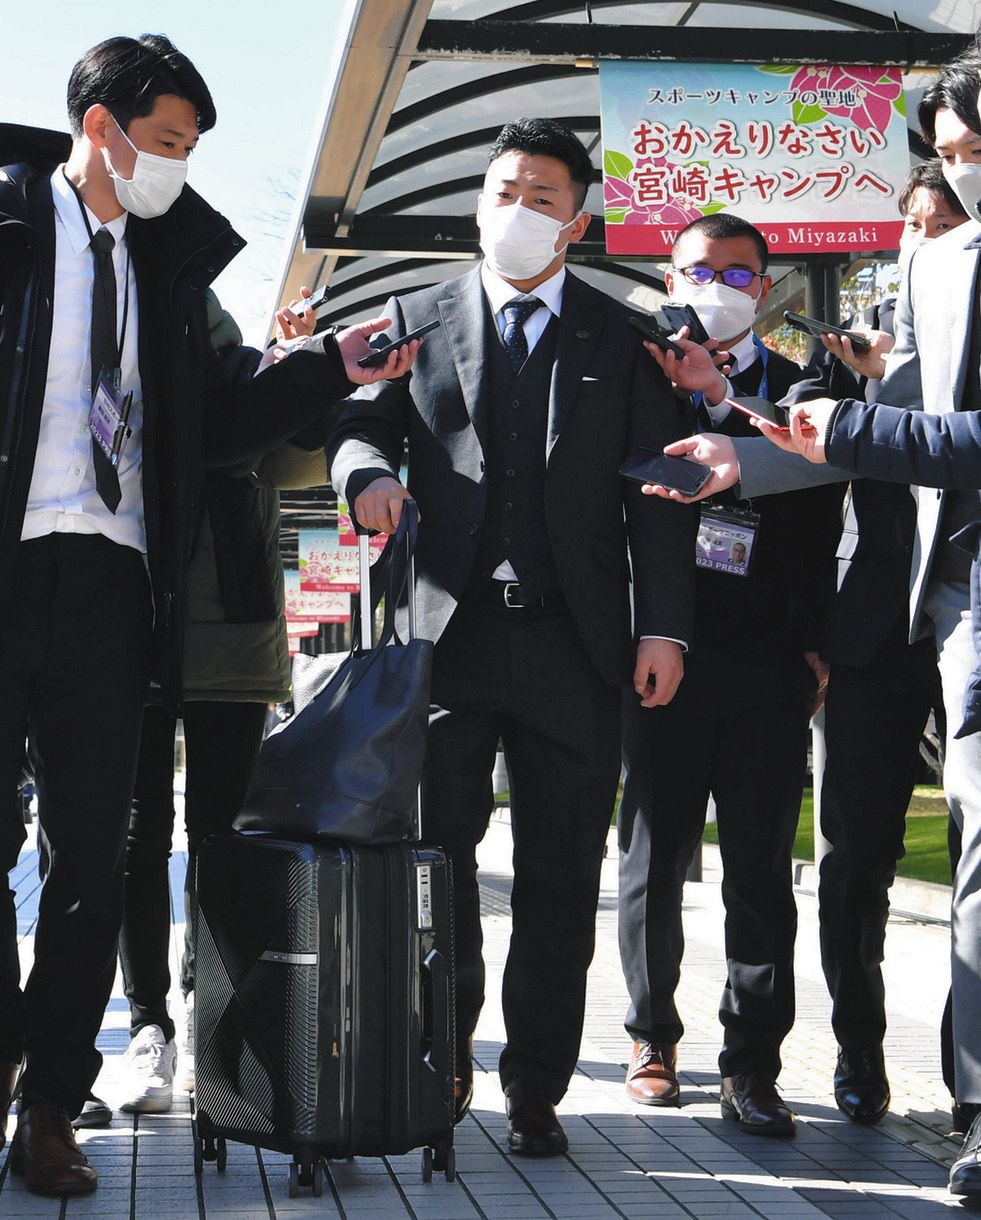 宮崎空港に到着し、記者の質問に答える巨人・浅野